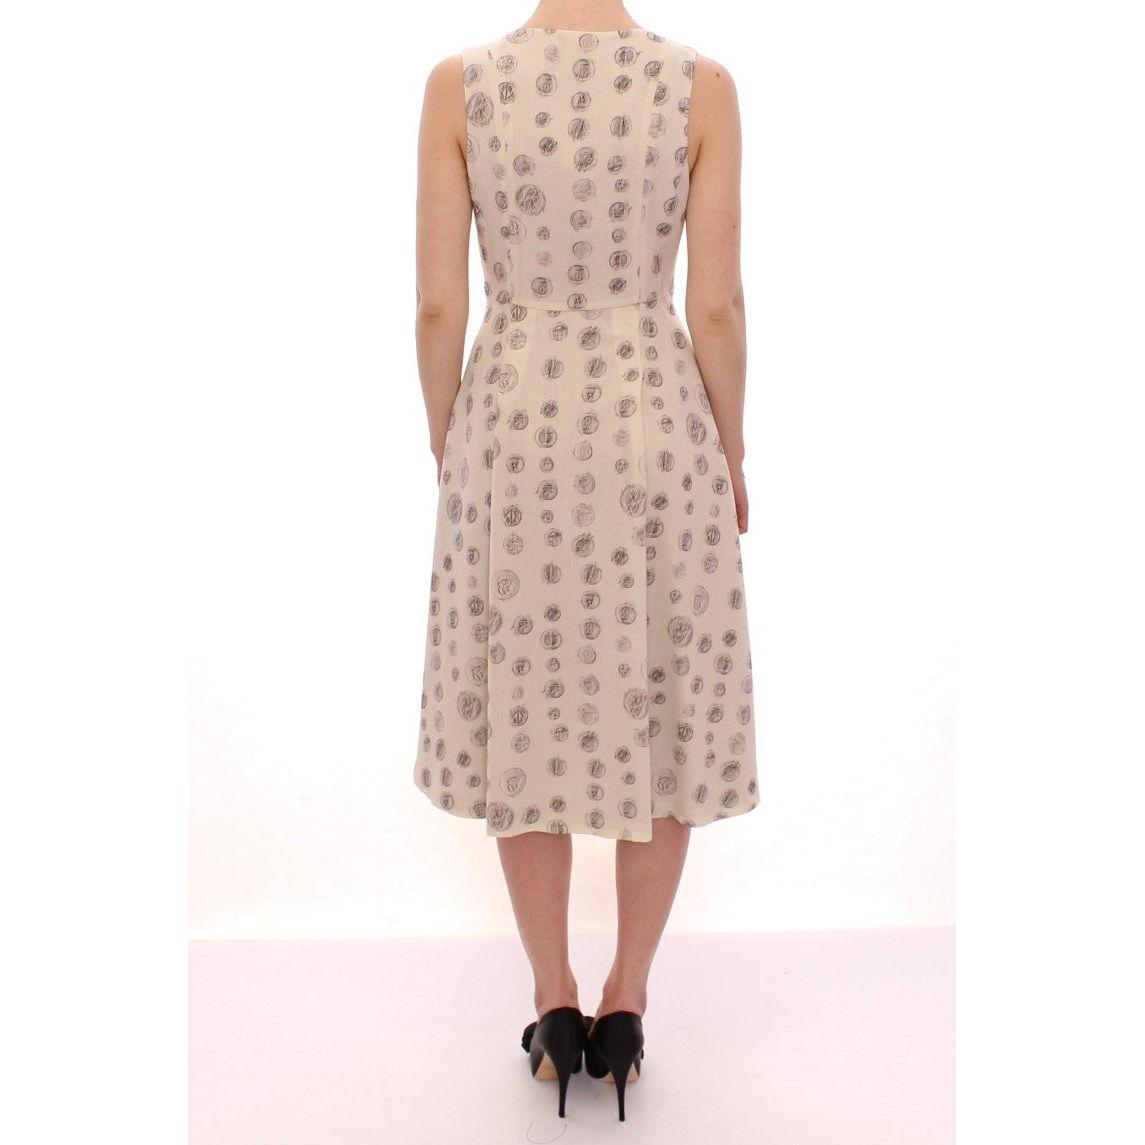 Andrea Incontri | White Printed Shift V-neck Sheath Dress | McRichard Designer Brands